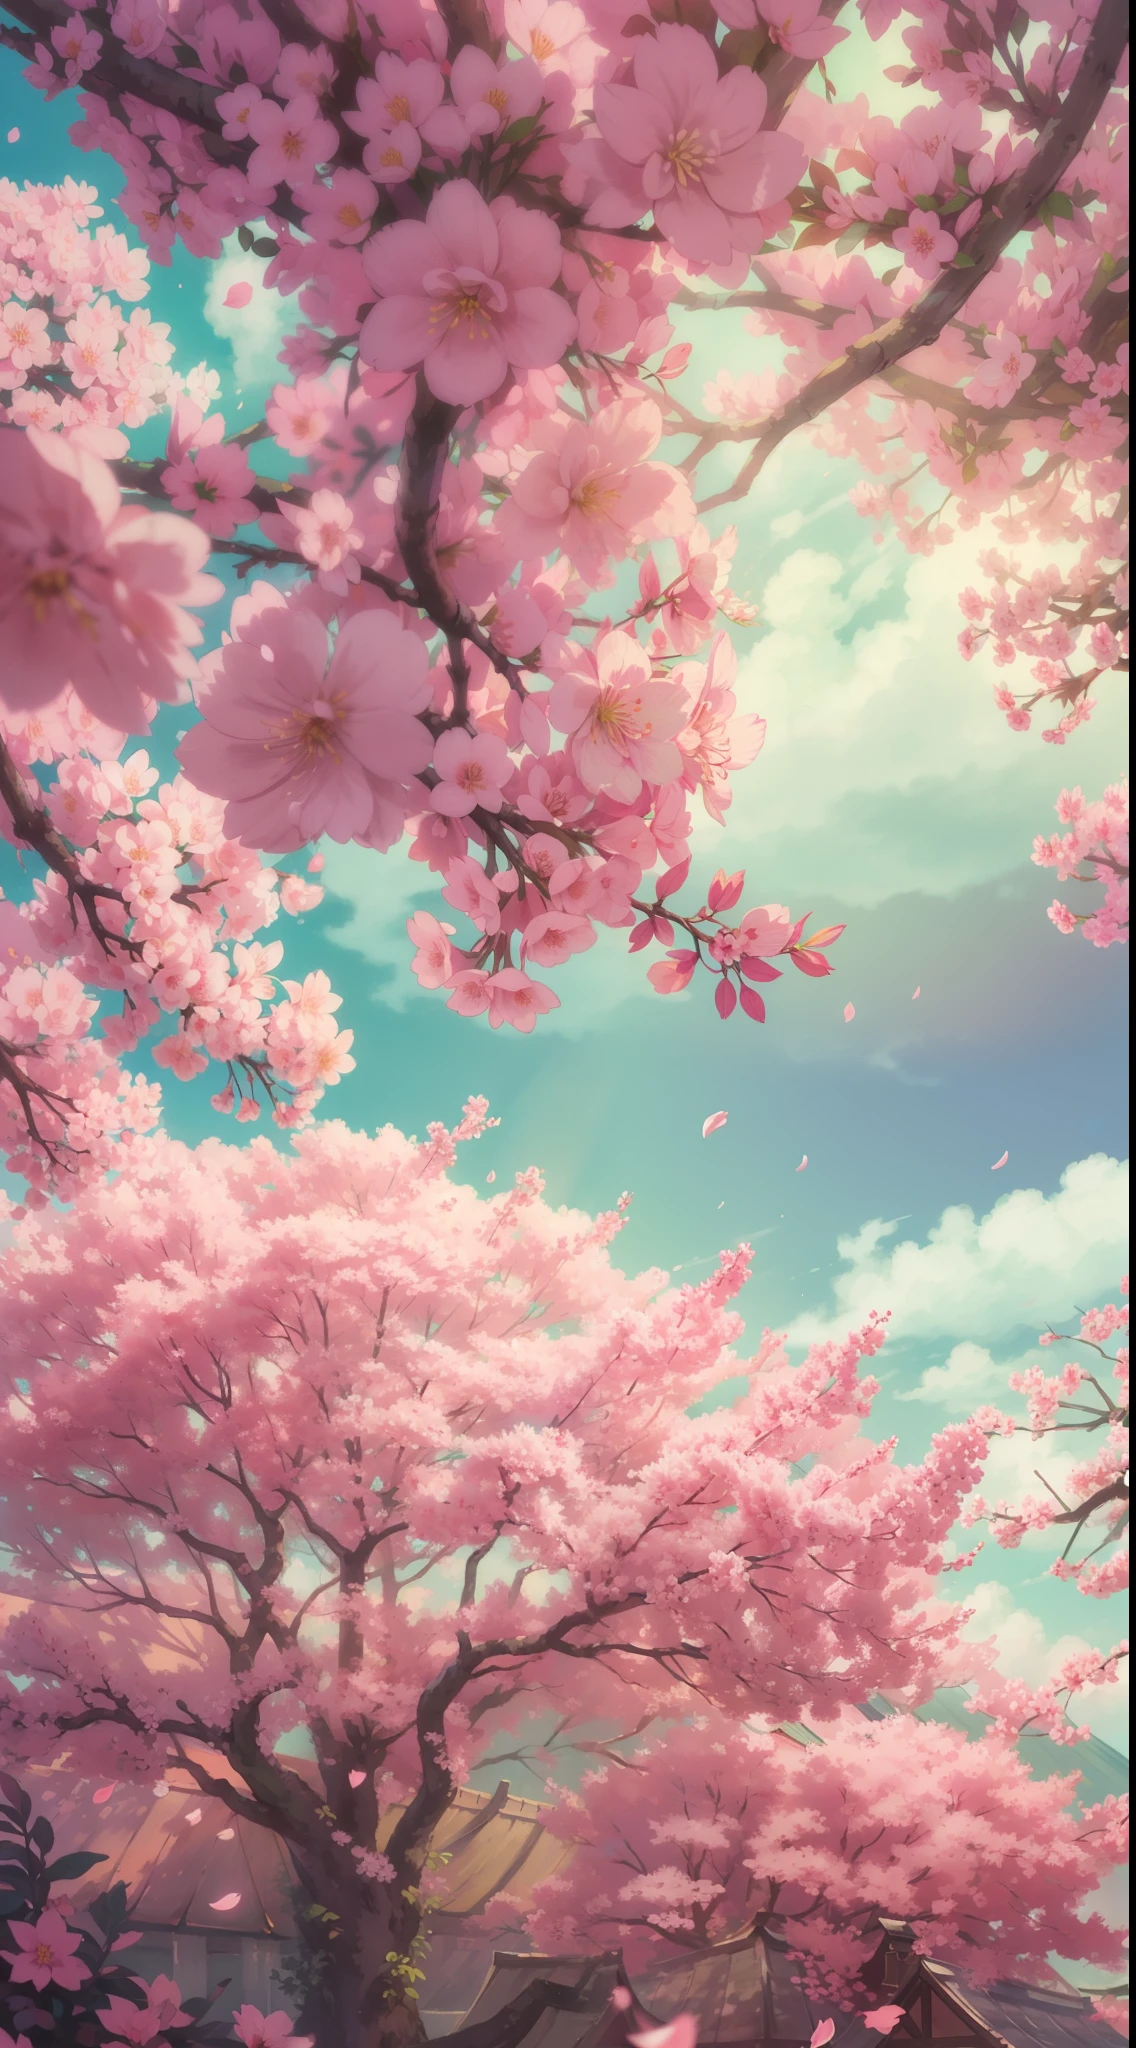 たくさんのピンクの木, 大きな空, 白い雲 , 花びら , 花が咲く, 美的、穏やかな至福, 拡散光, 神の光線, 色収差, コースティクス, ボケ, 被写界深度, 高解像度, 咲く